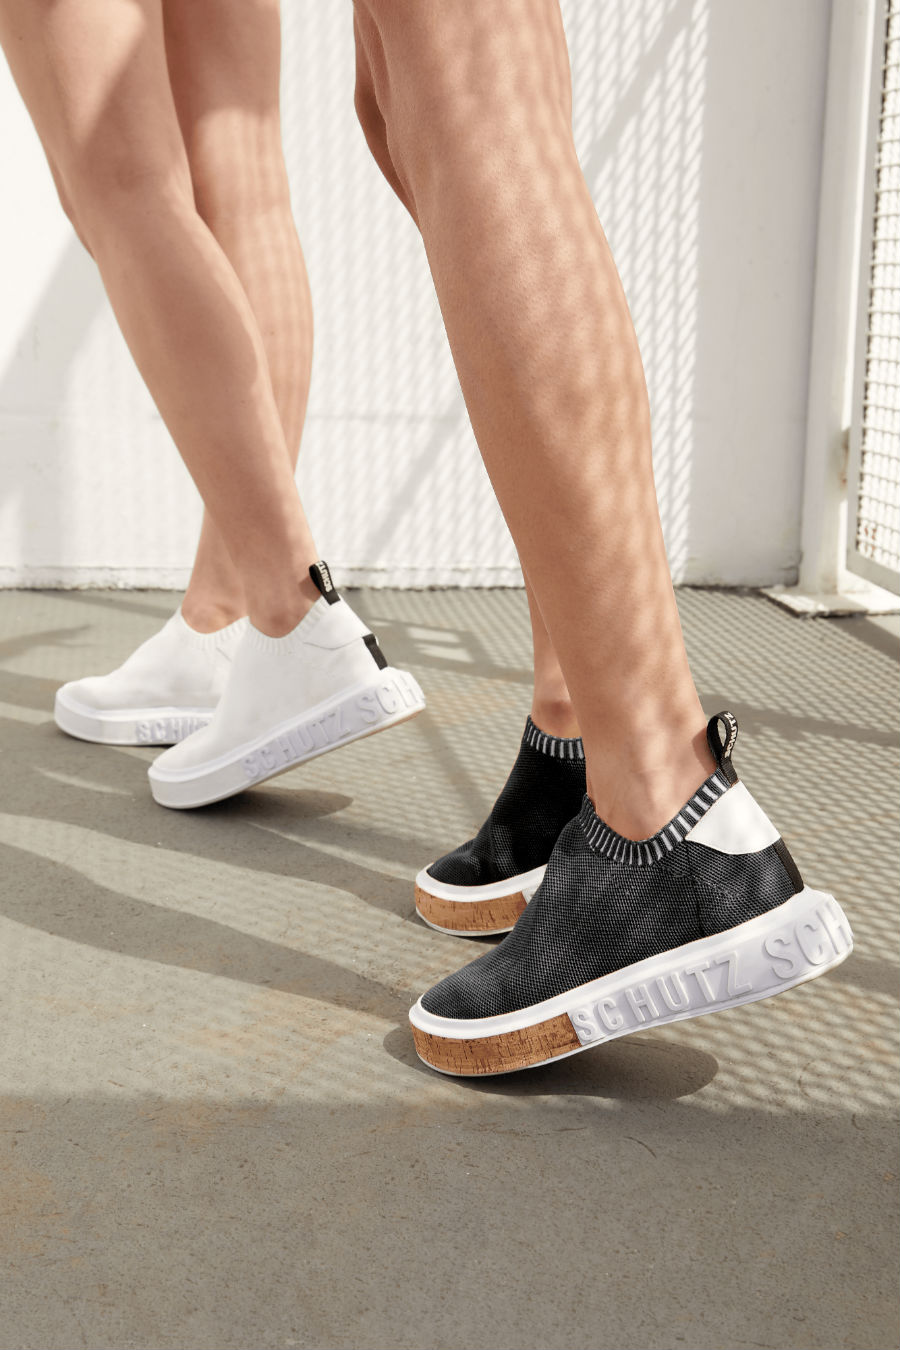 Schutz lança nova coleção de sneakers